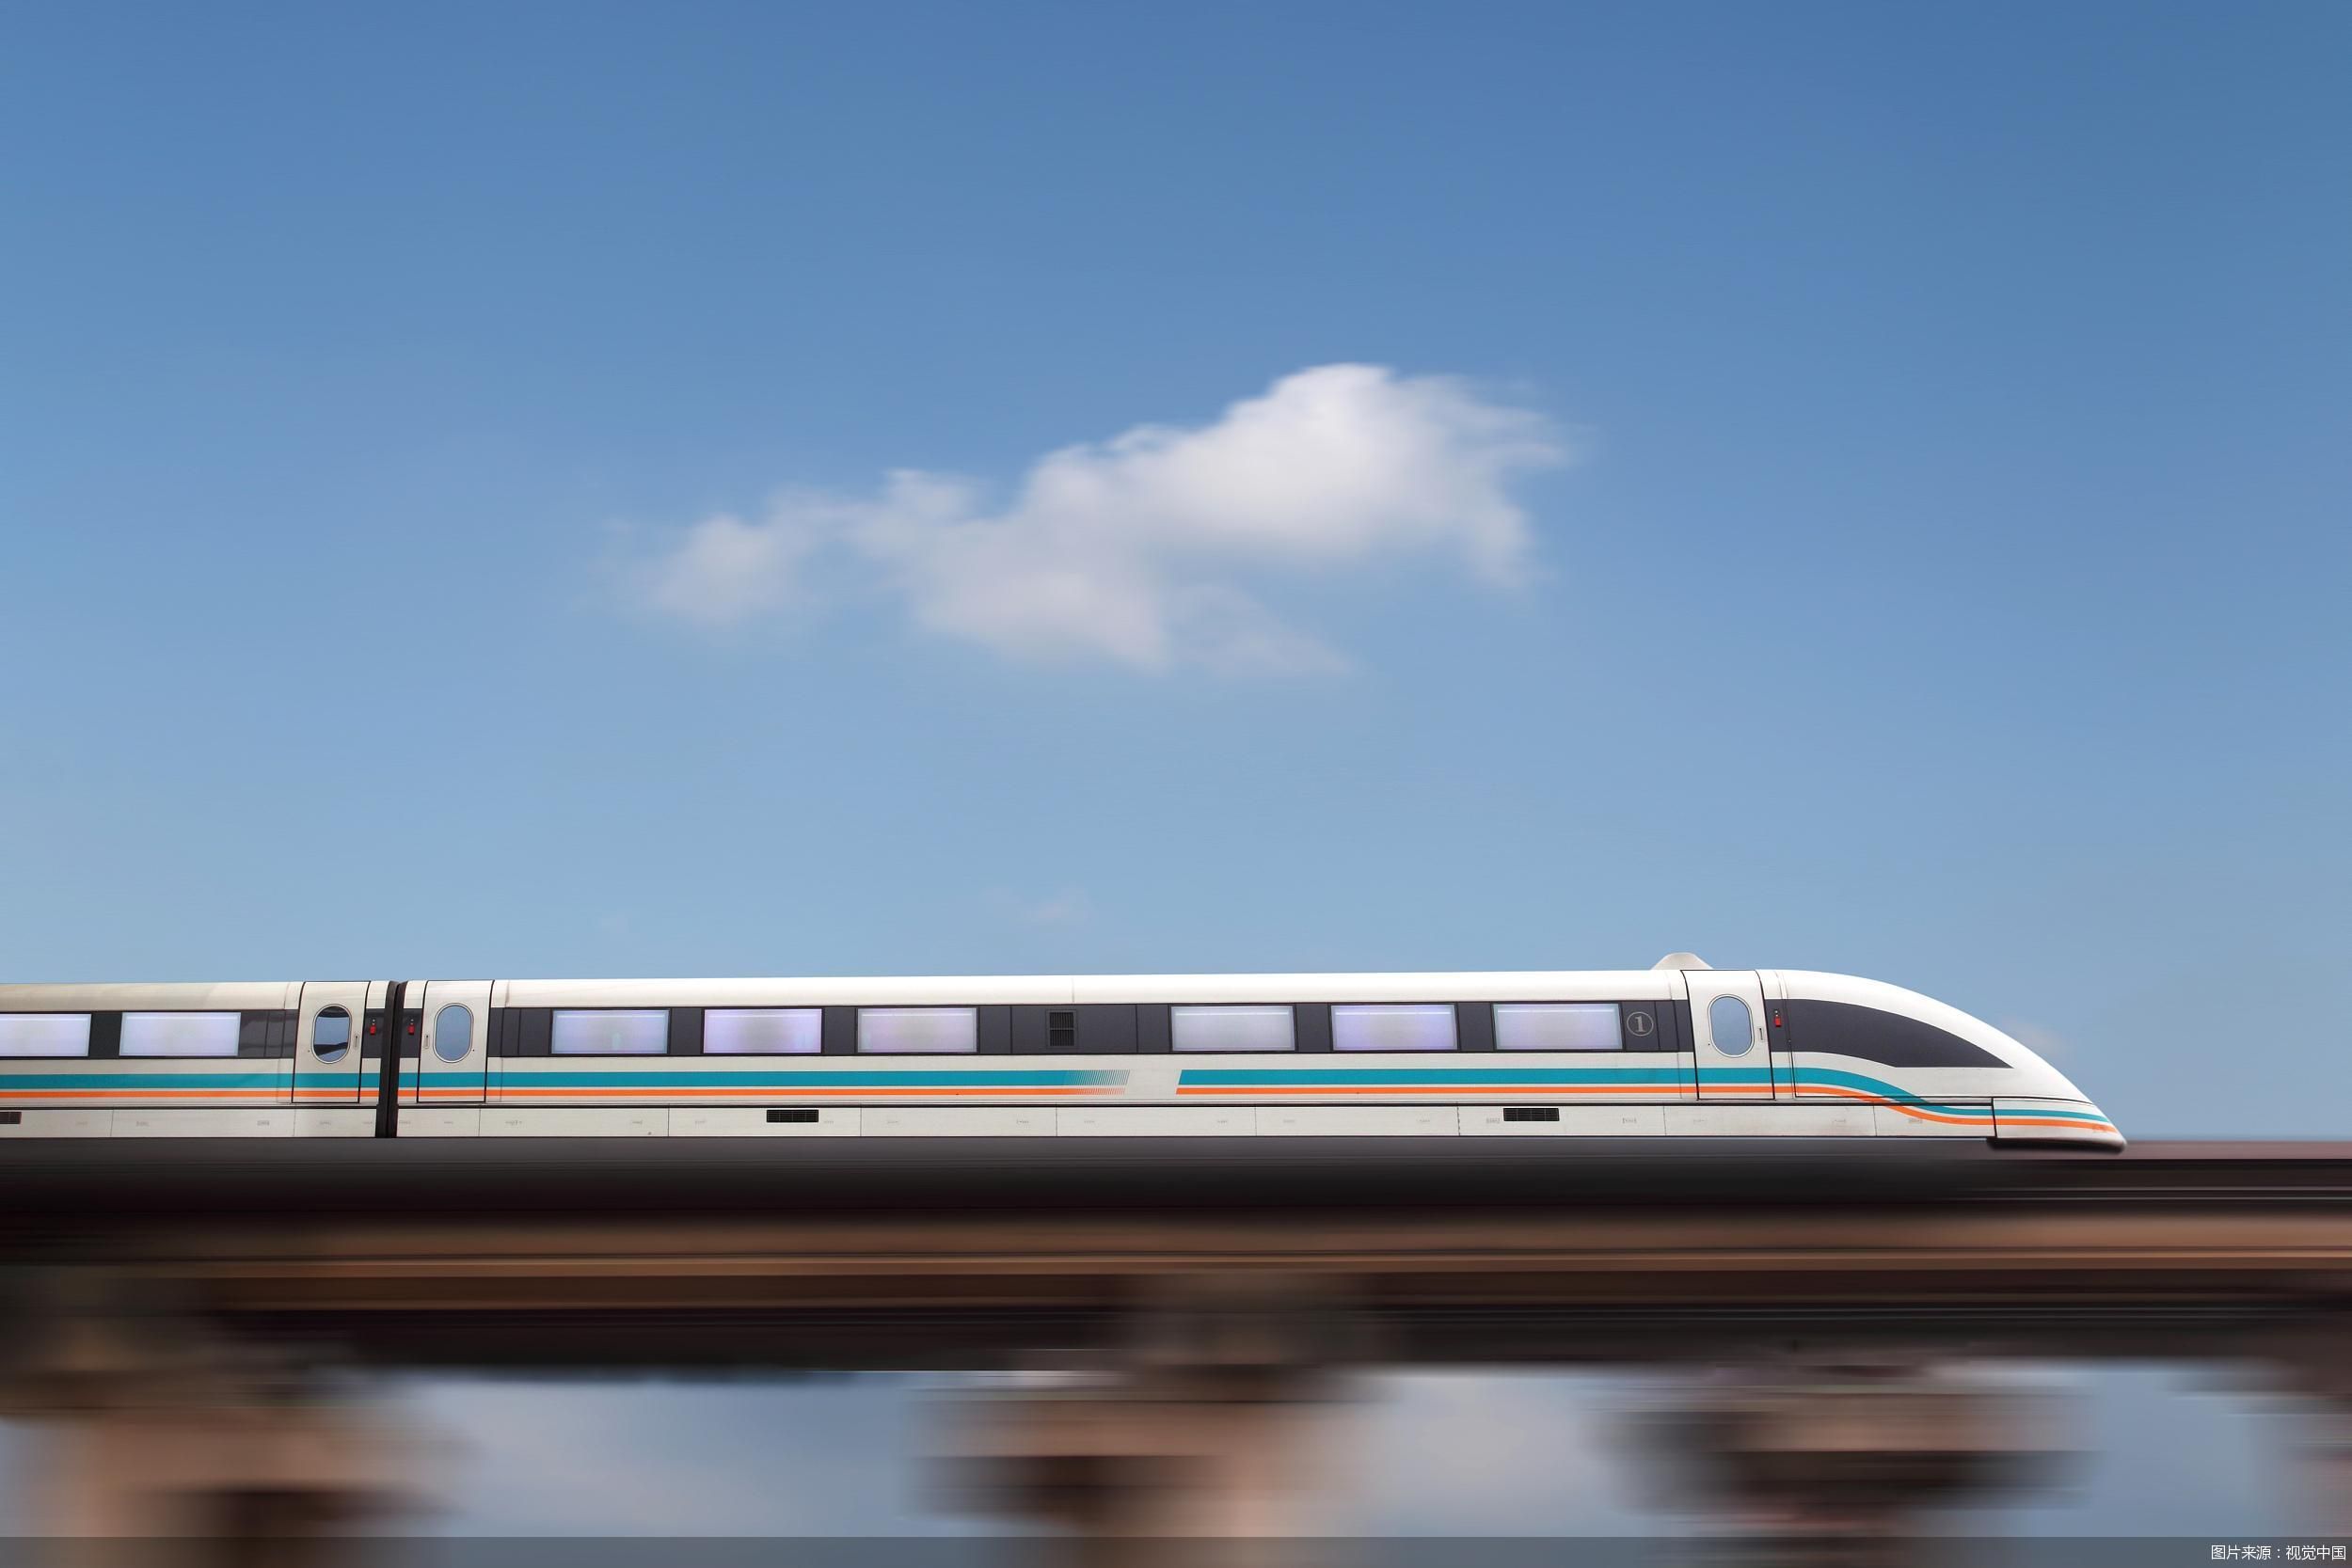 京张高铁开通2周年:从铁路看冬奥保障